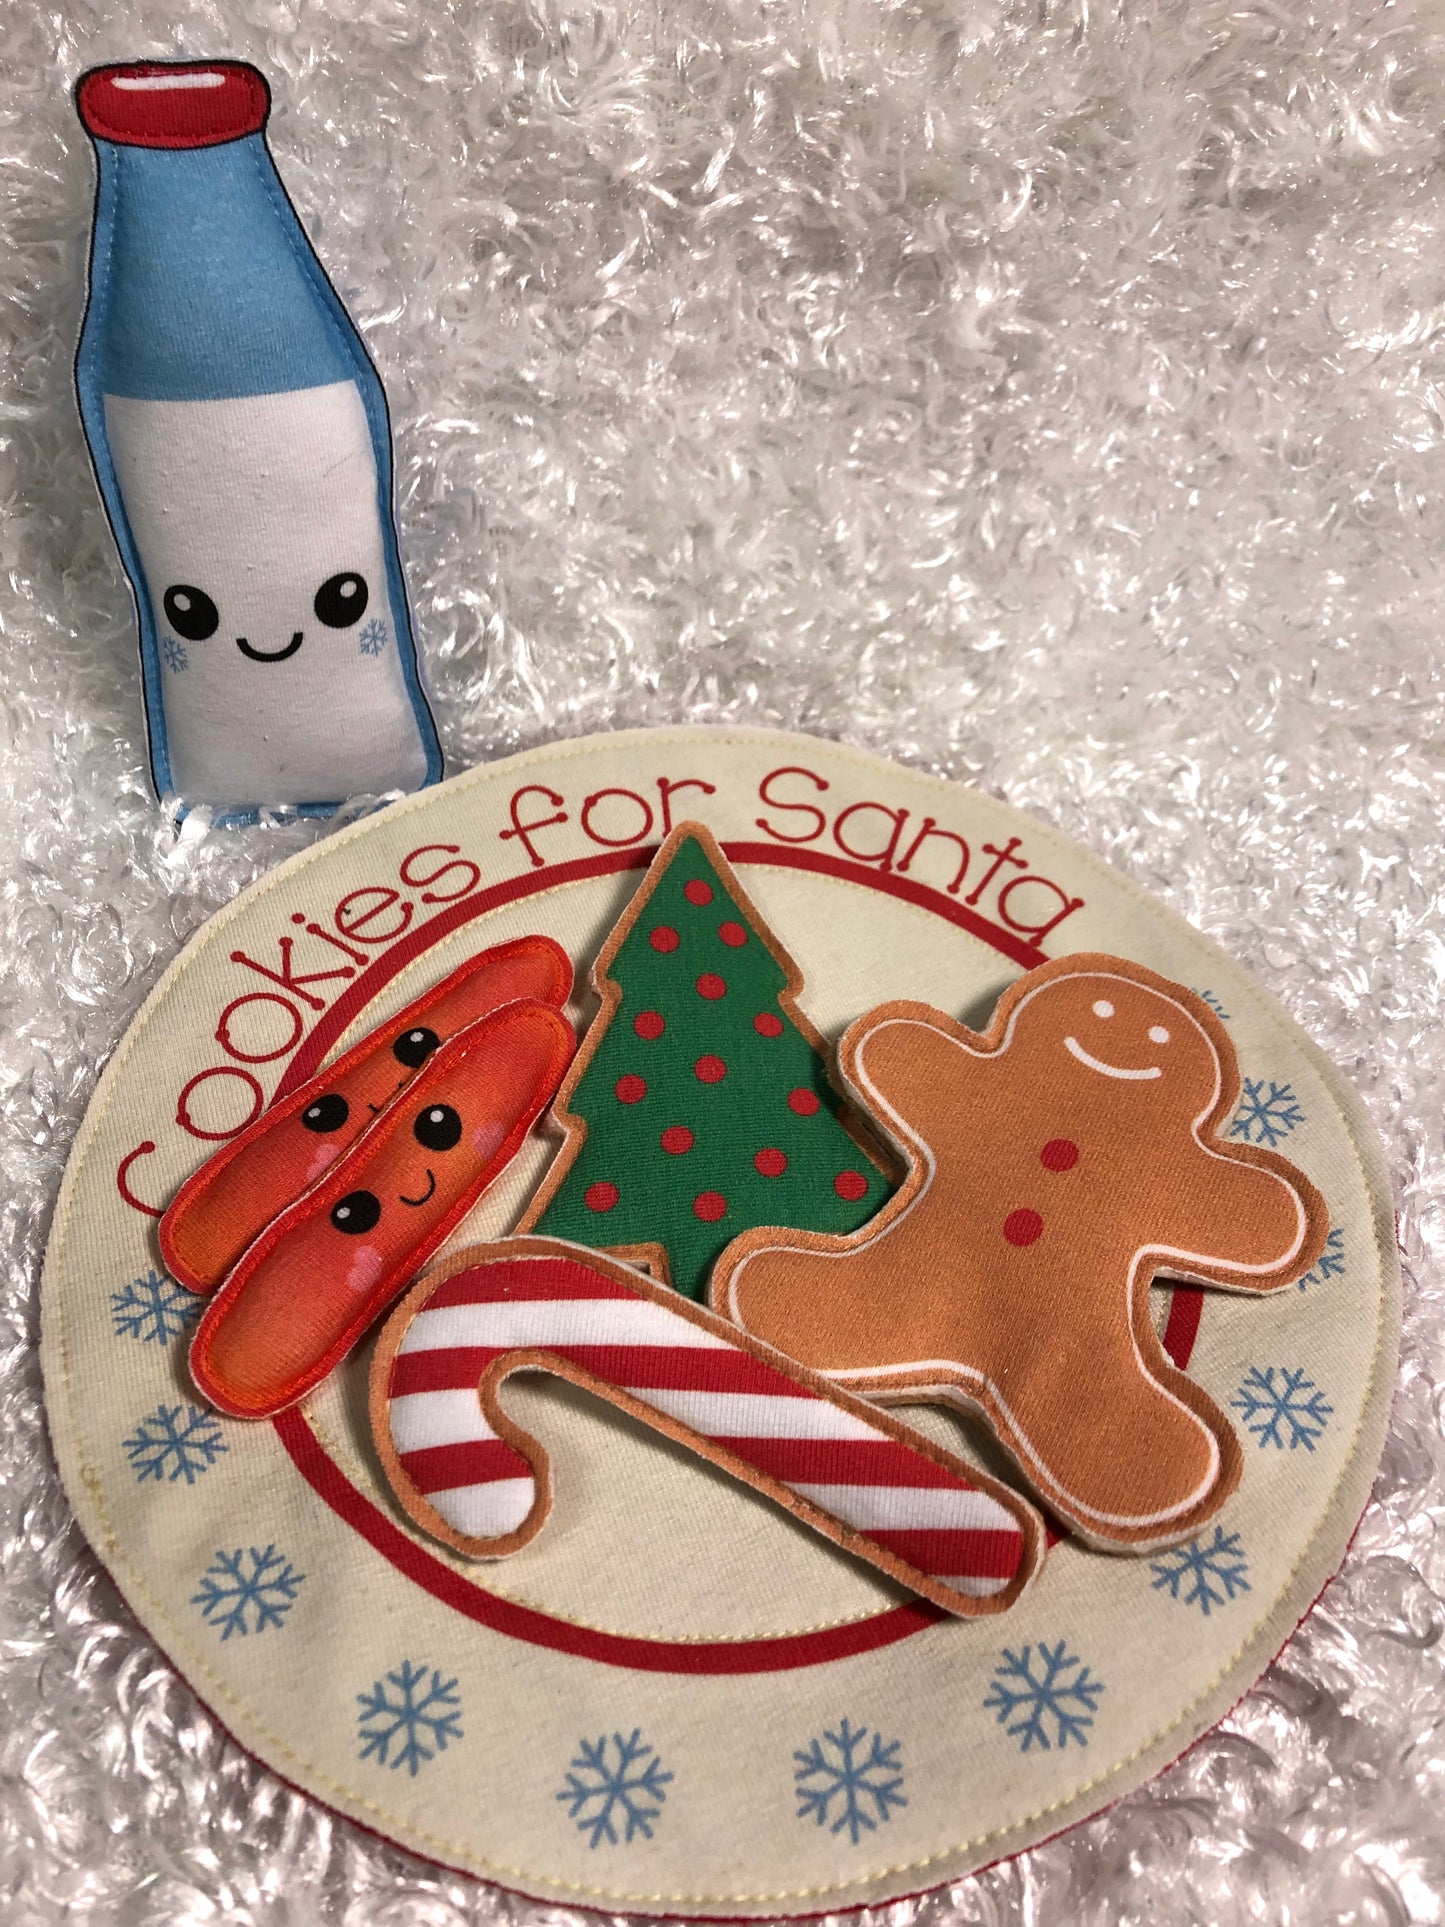 Cookies for Santa Panel